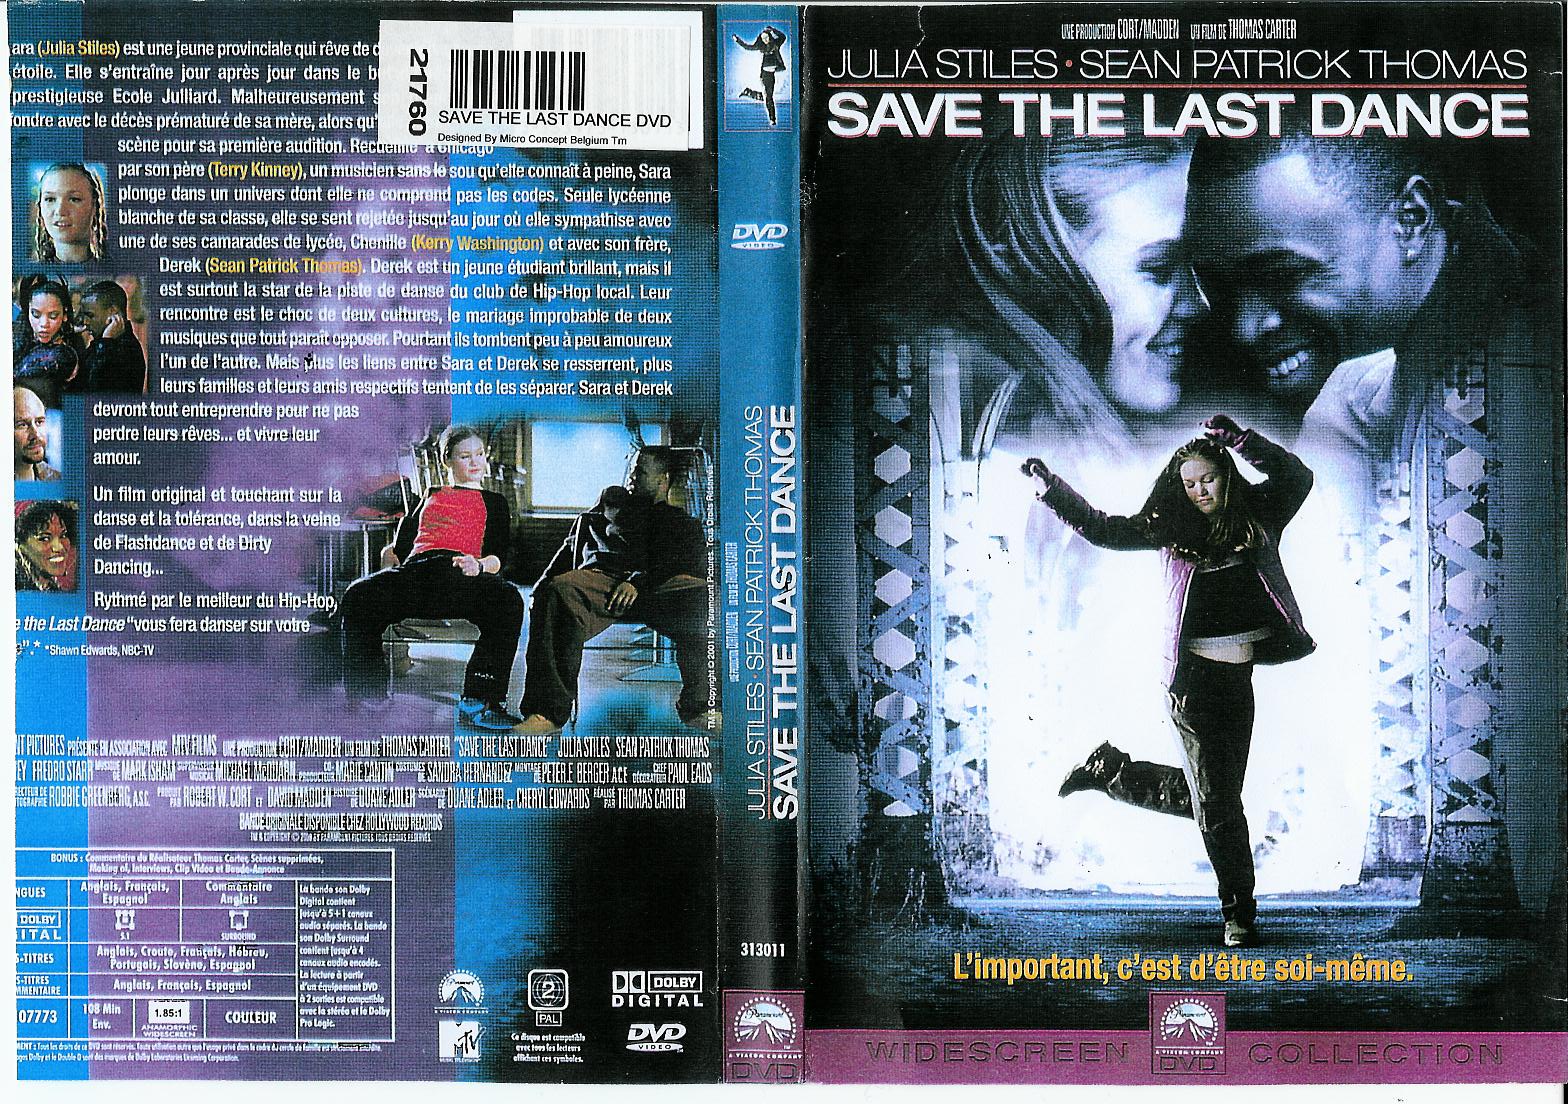 Bizim Dansımız - Save the Last Dance 2001.